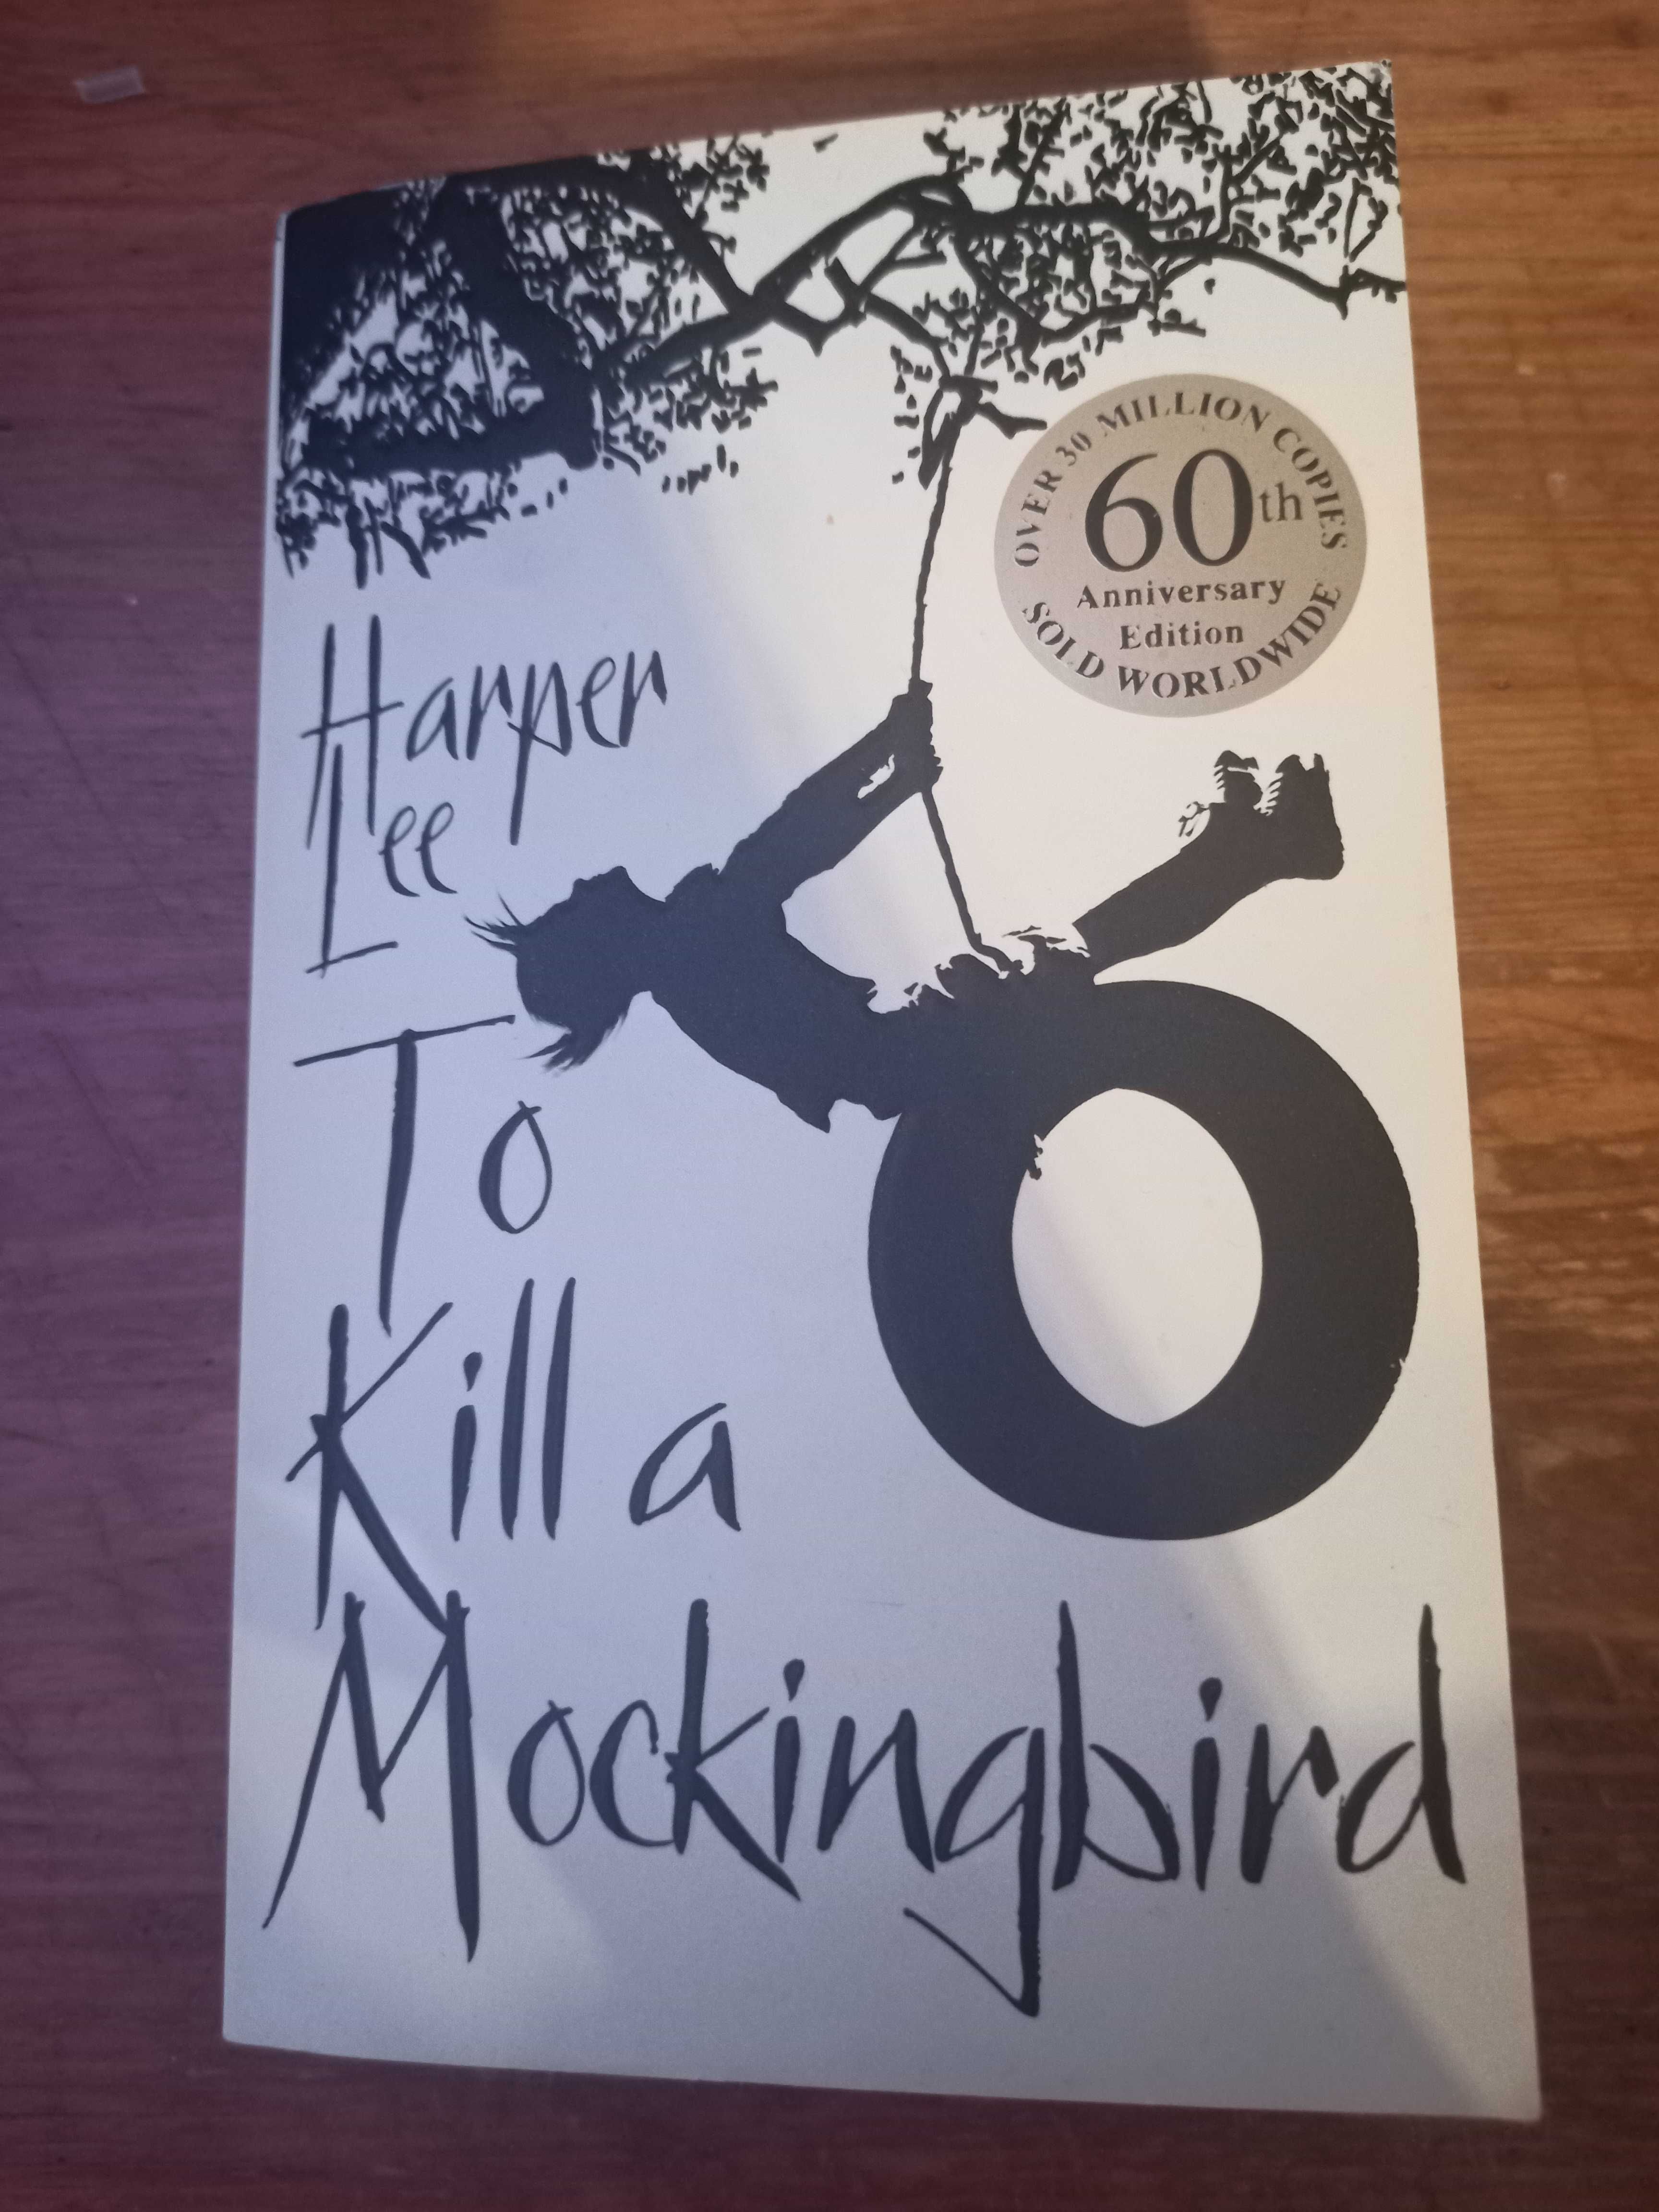 To kill a mockingbird - Harper Lee